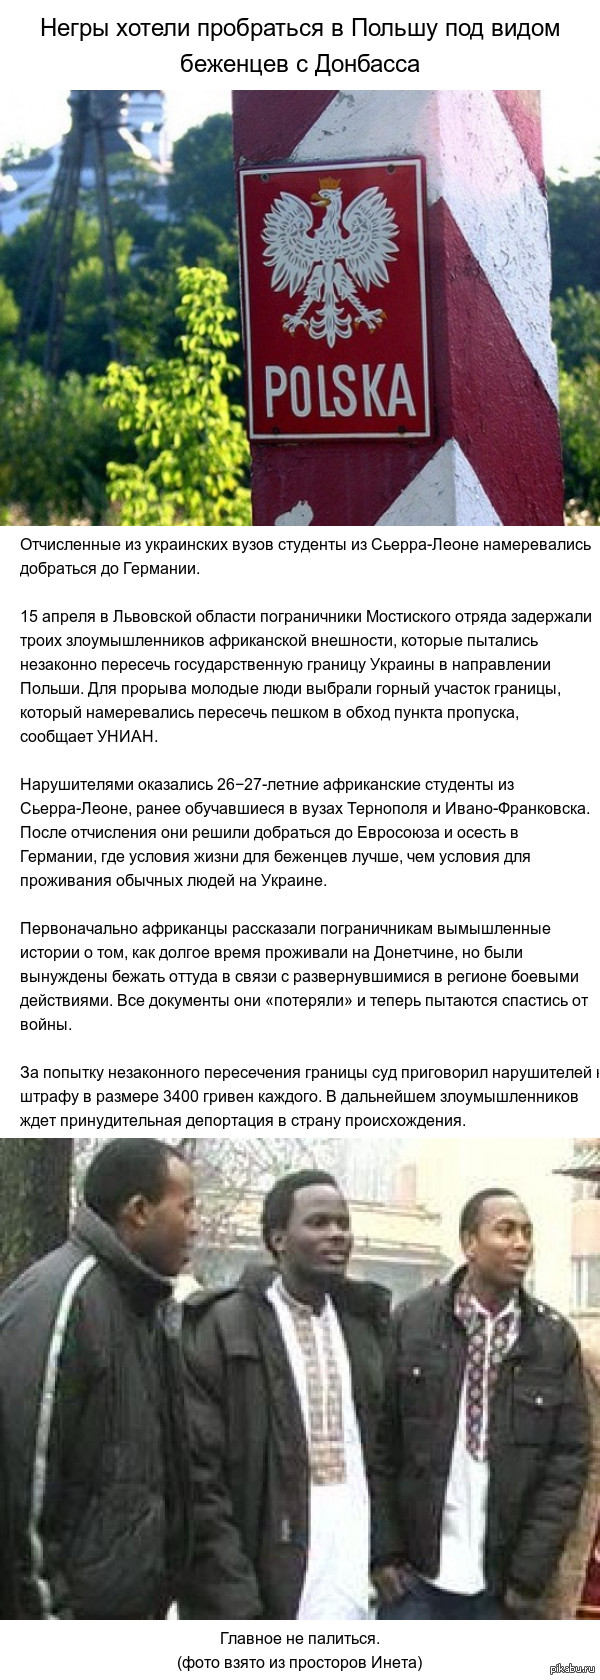   http://www.ridus.ru/news/183193